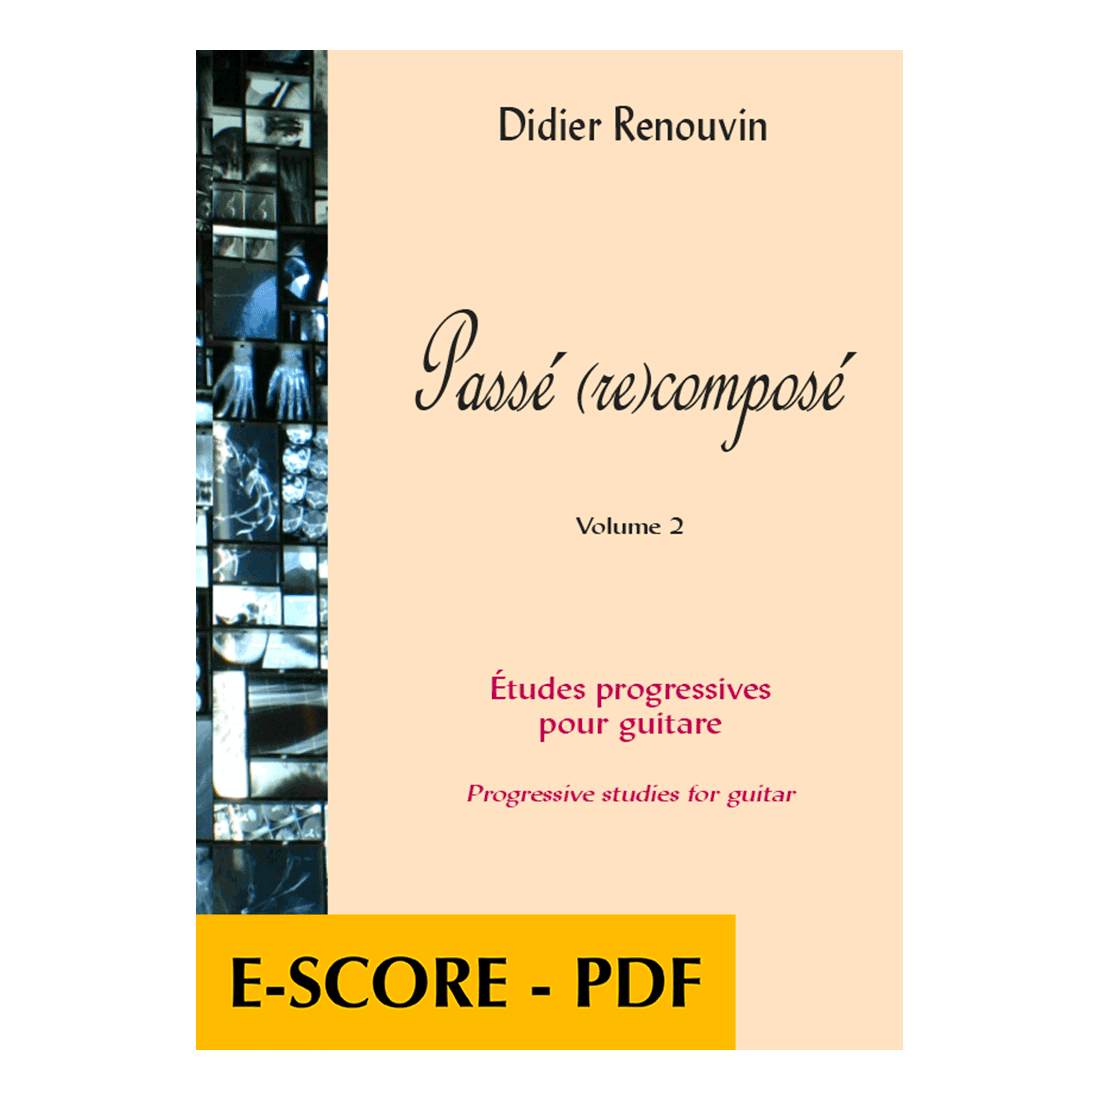 Passé (re)composé - Progressive Studien für Gitarre band 2 - E-Score PDF